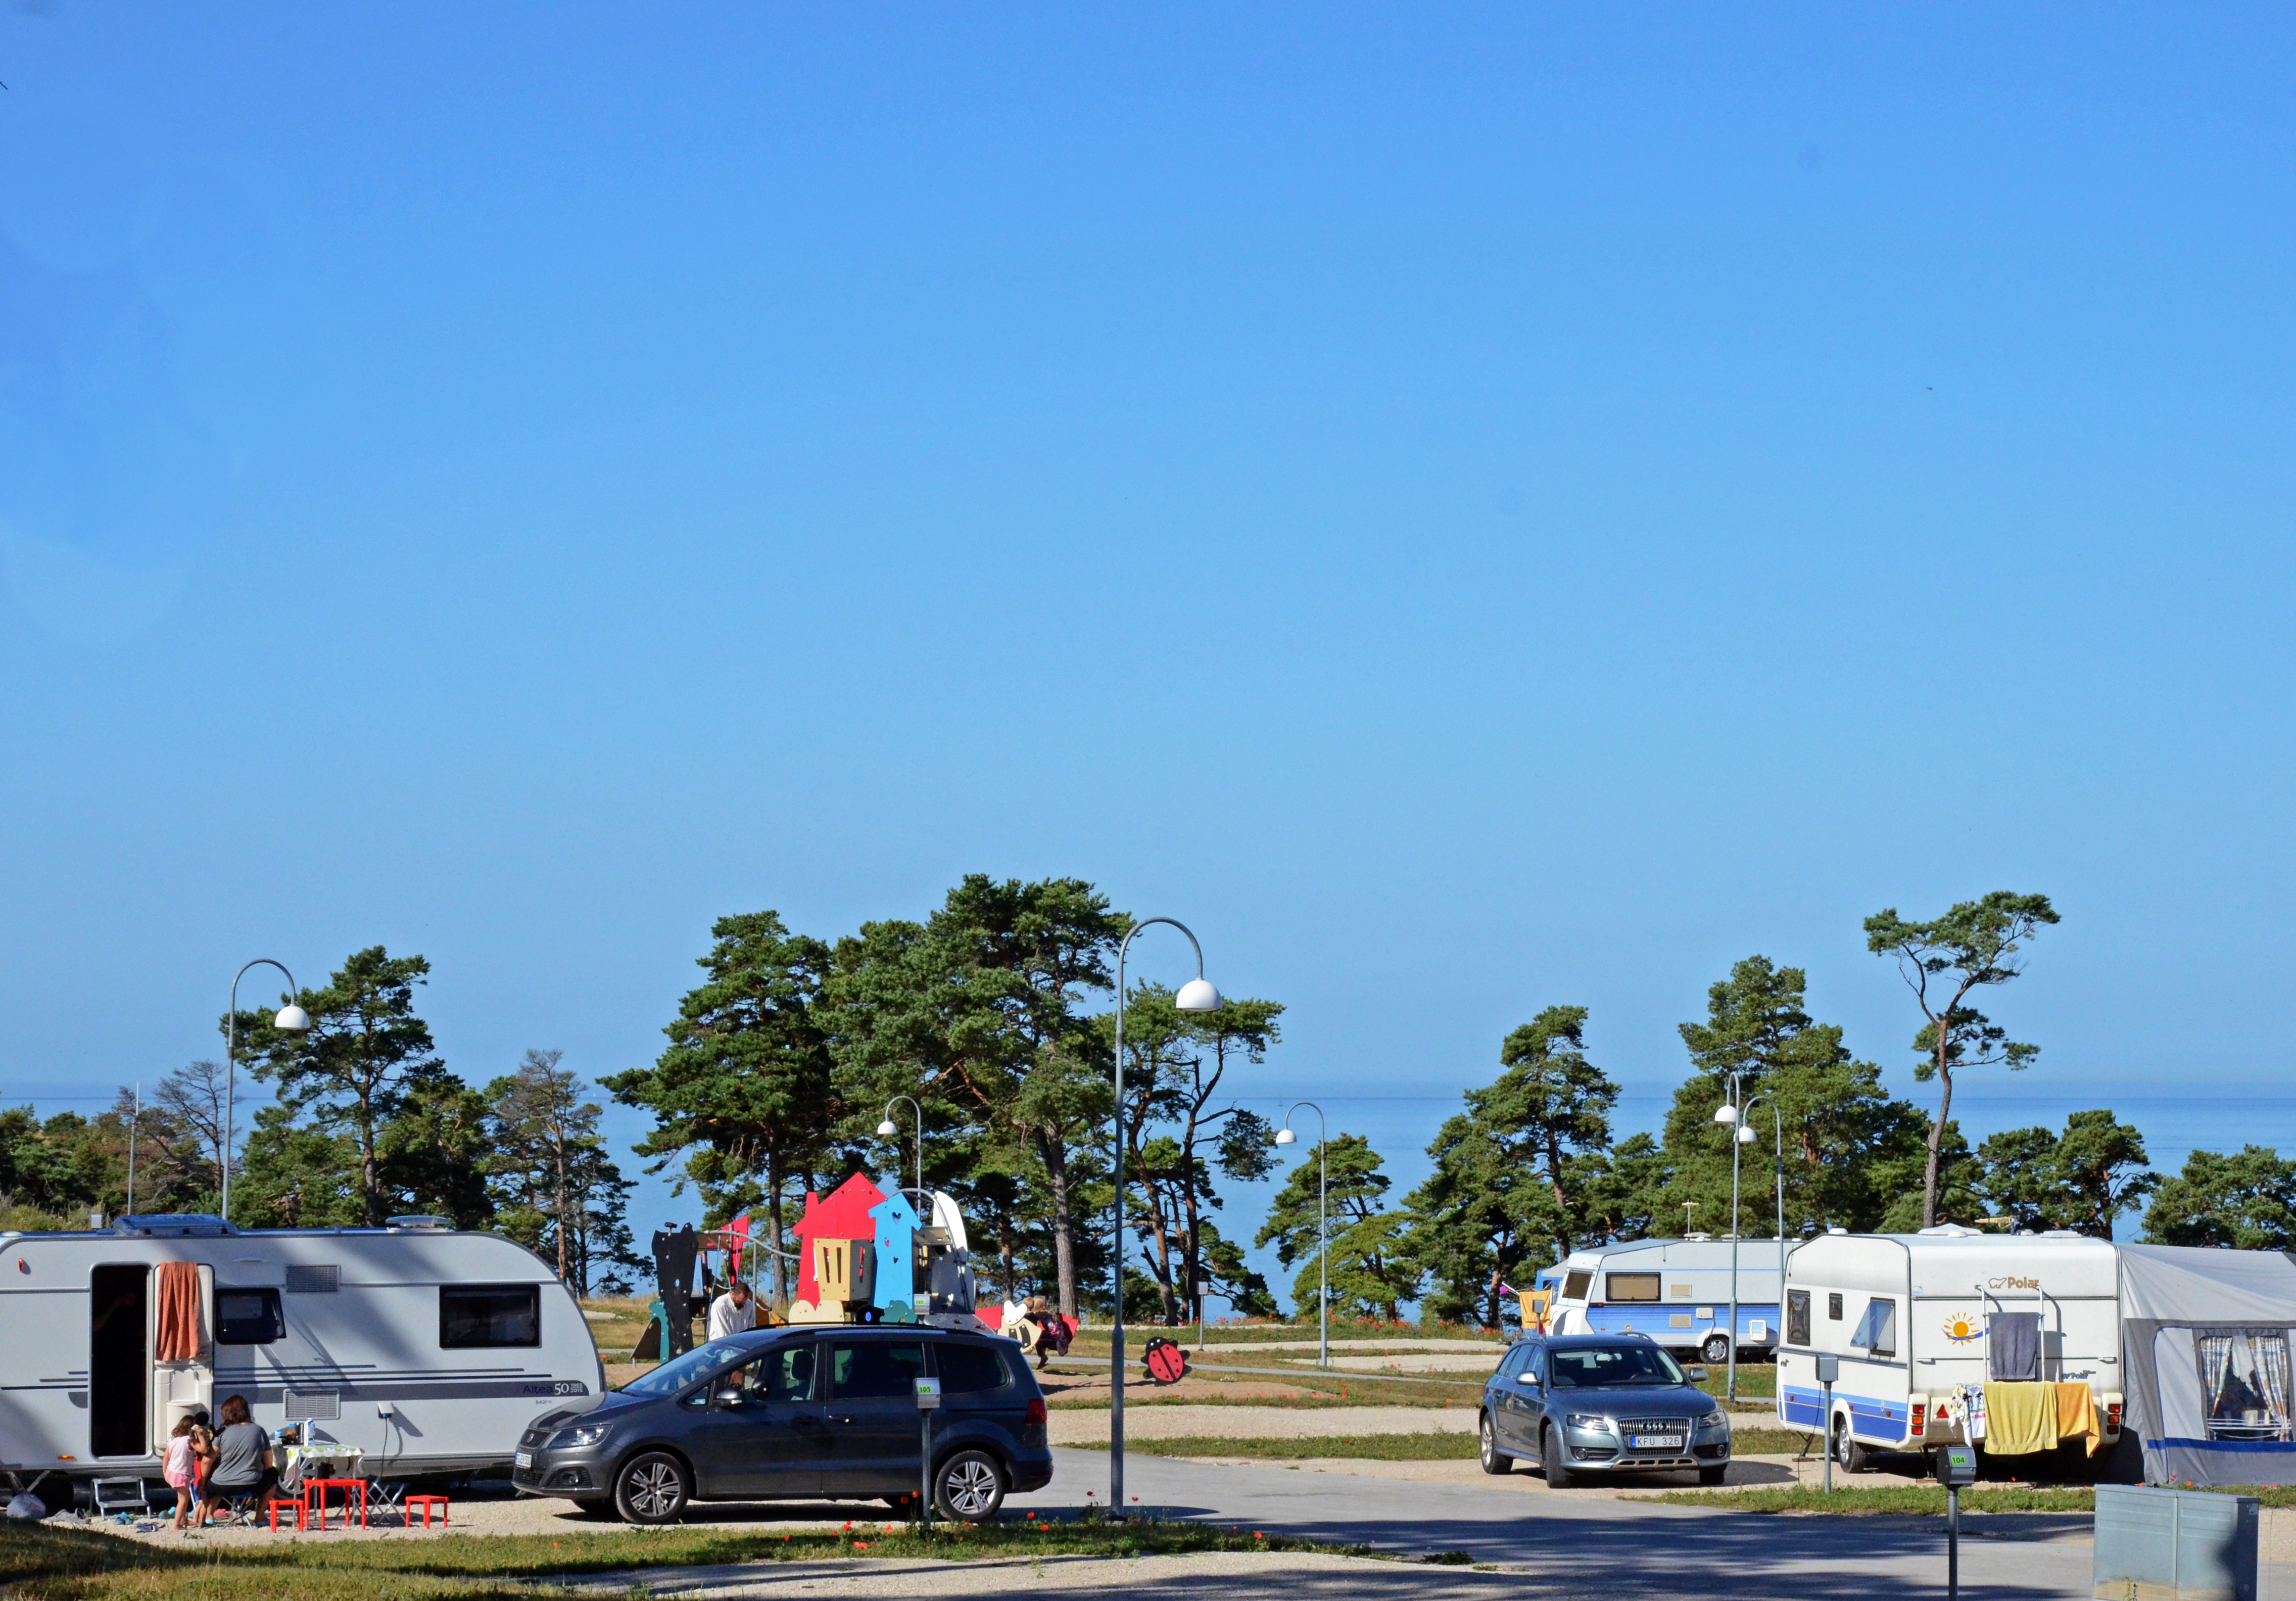 3 bästa campingplatserna nära Visby på Gotland - CampingGotland.se